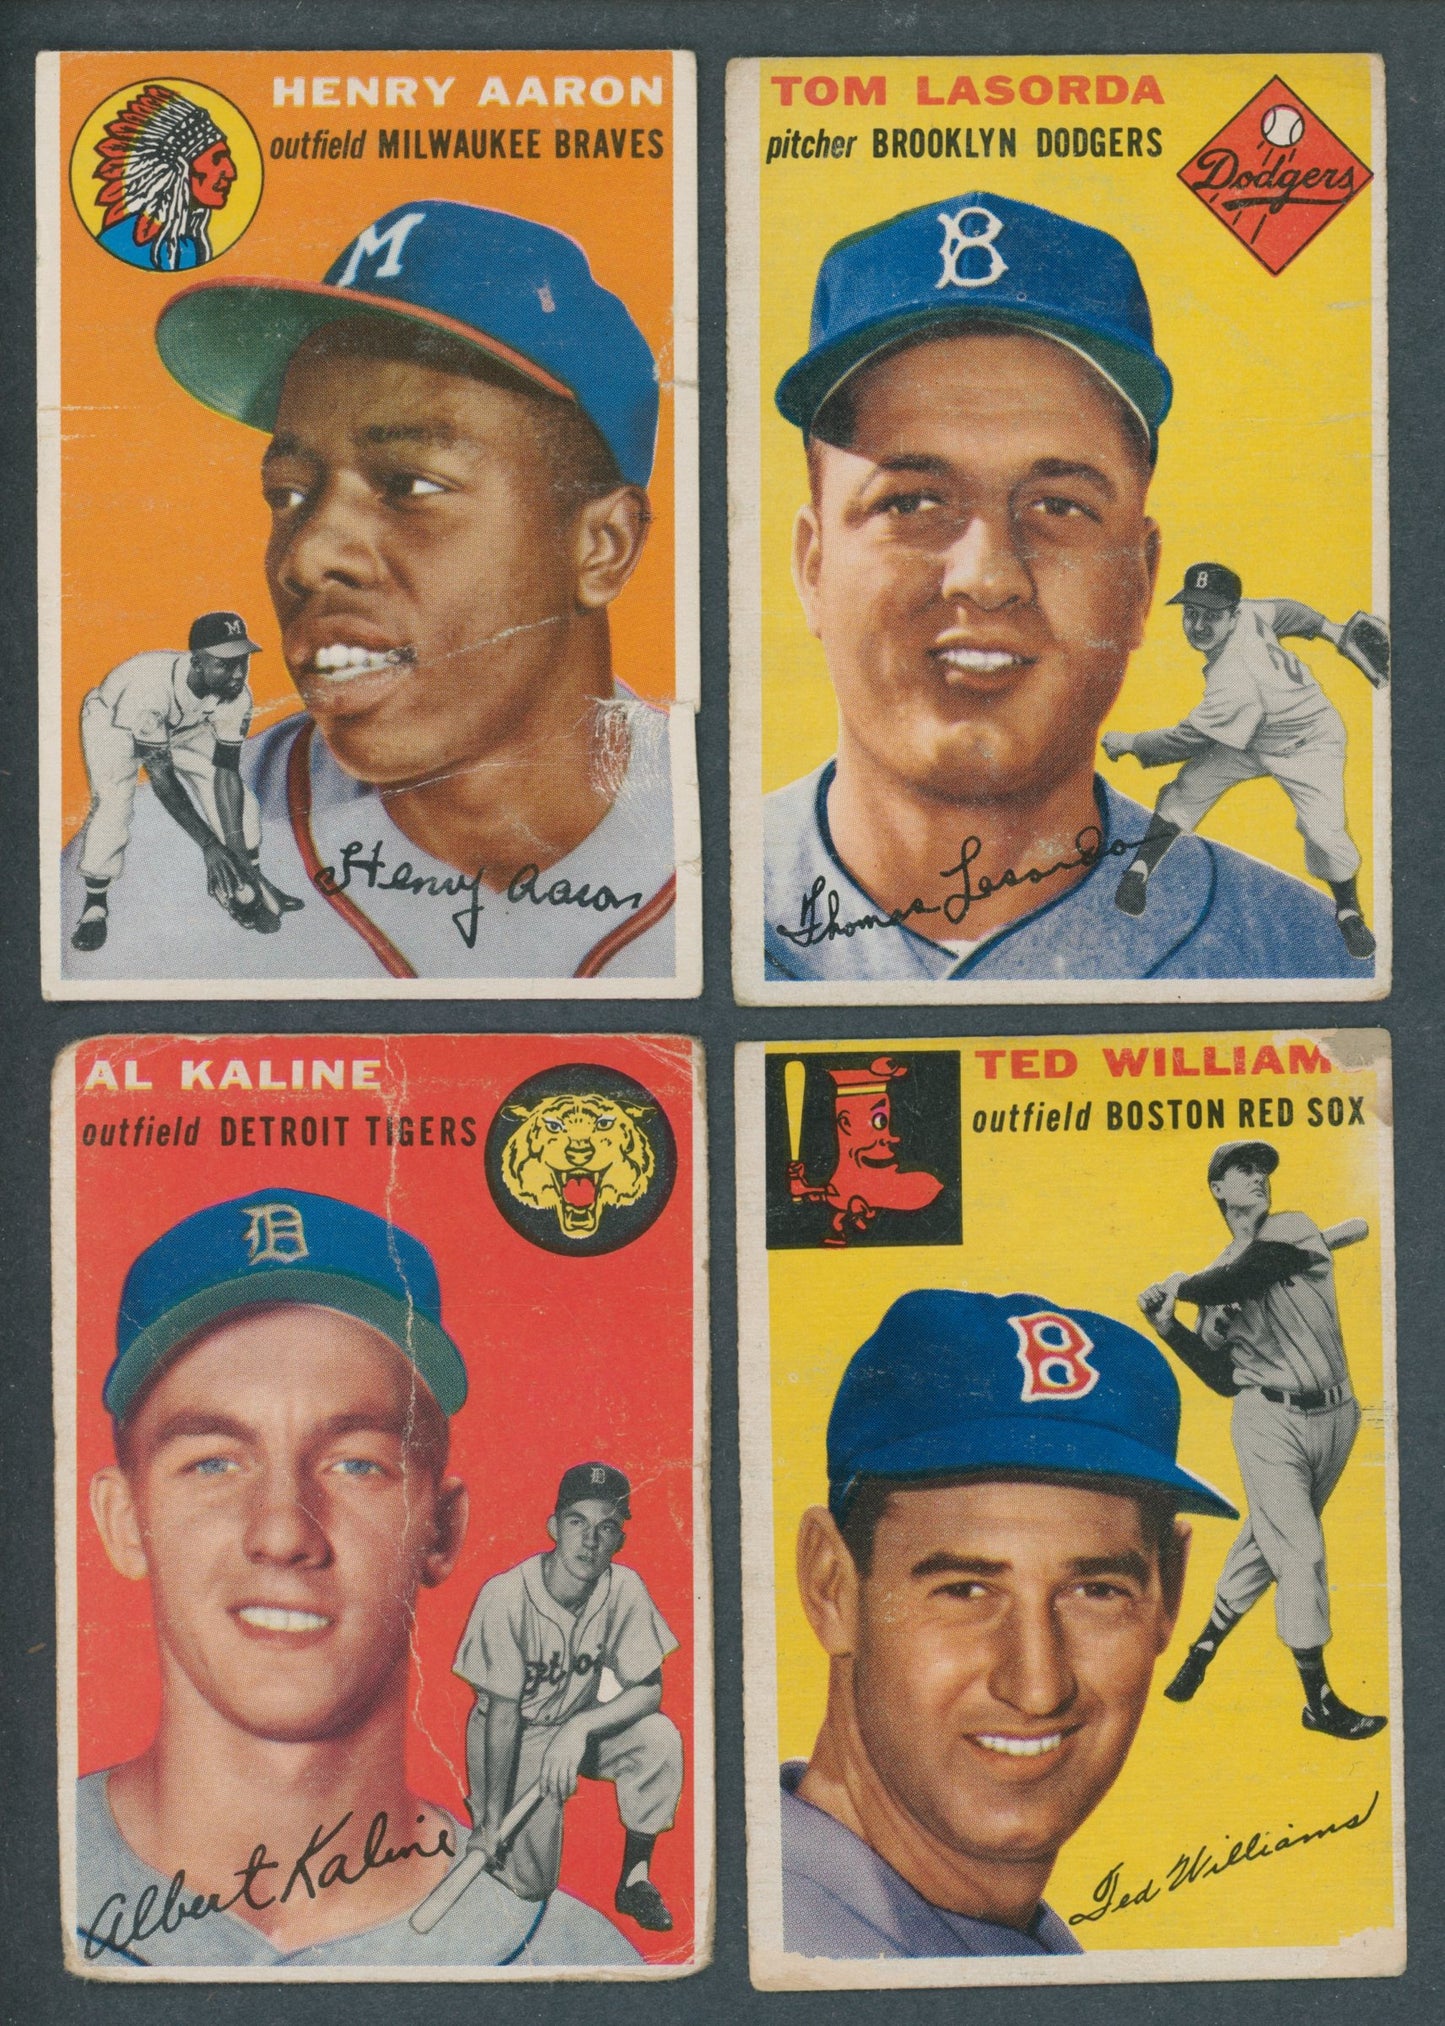 1954 Topps Baseball Near Set (249/250) PR VG